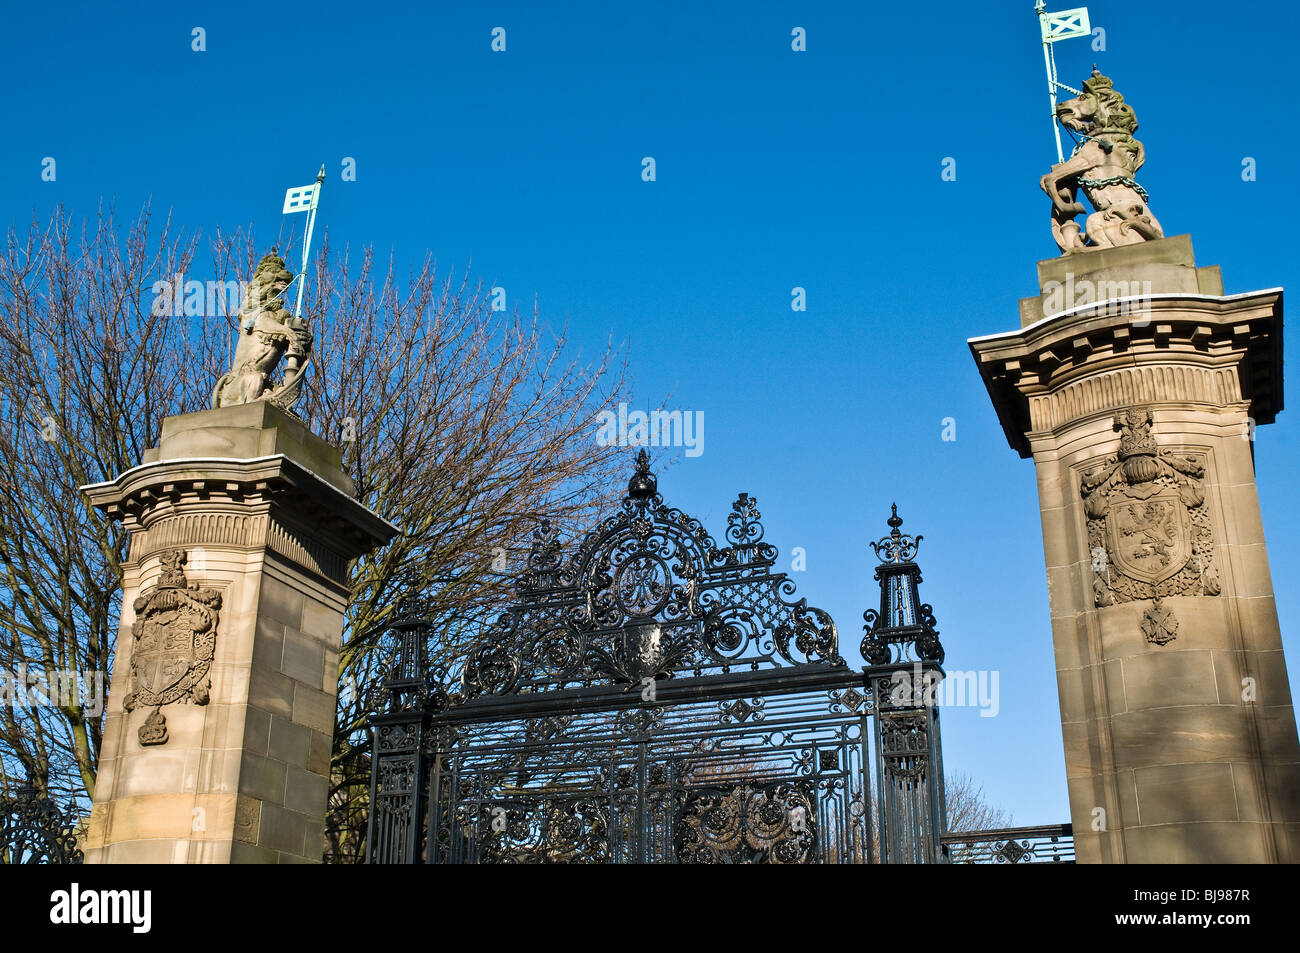 dh  HOLYROOD PALACE EDINBURGH Scotland palace gates unicorn decoration wrought iron gate Stock Photo